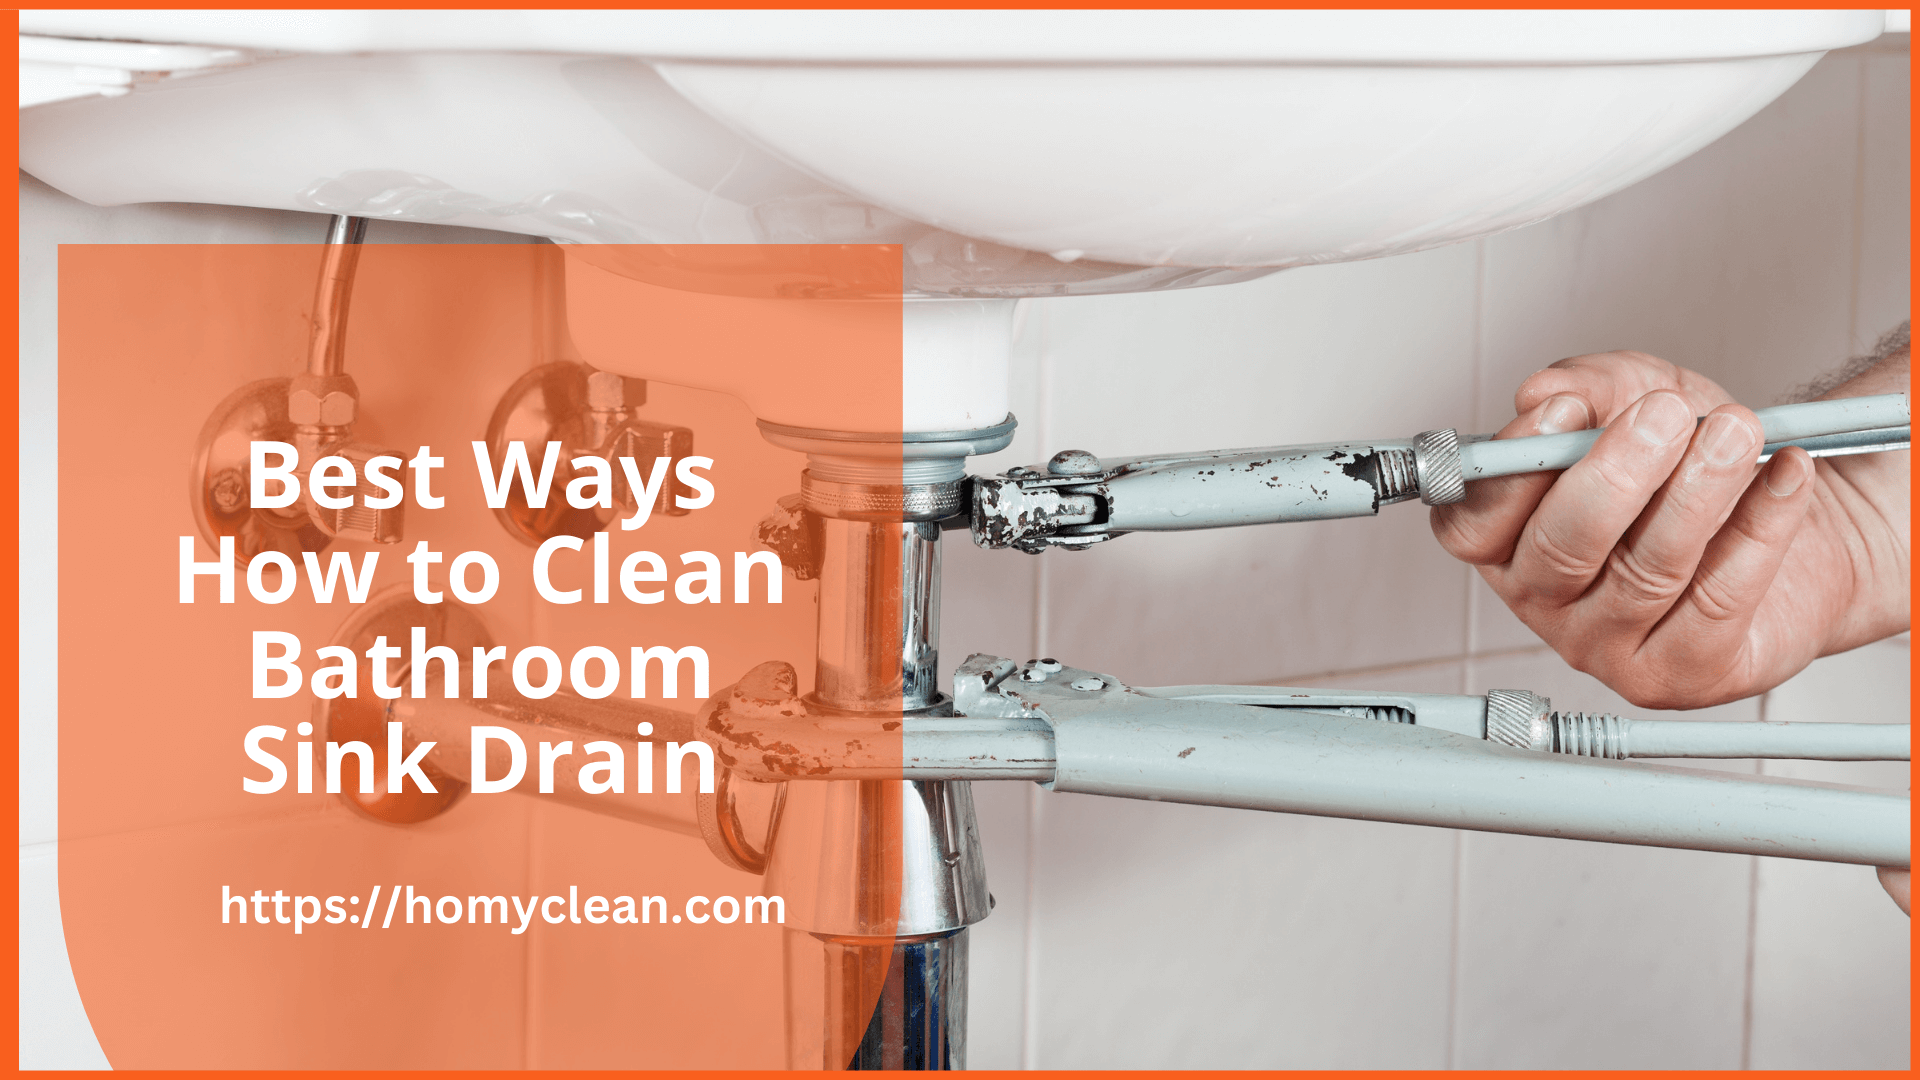 clean bathroom sink drain buzzfeed